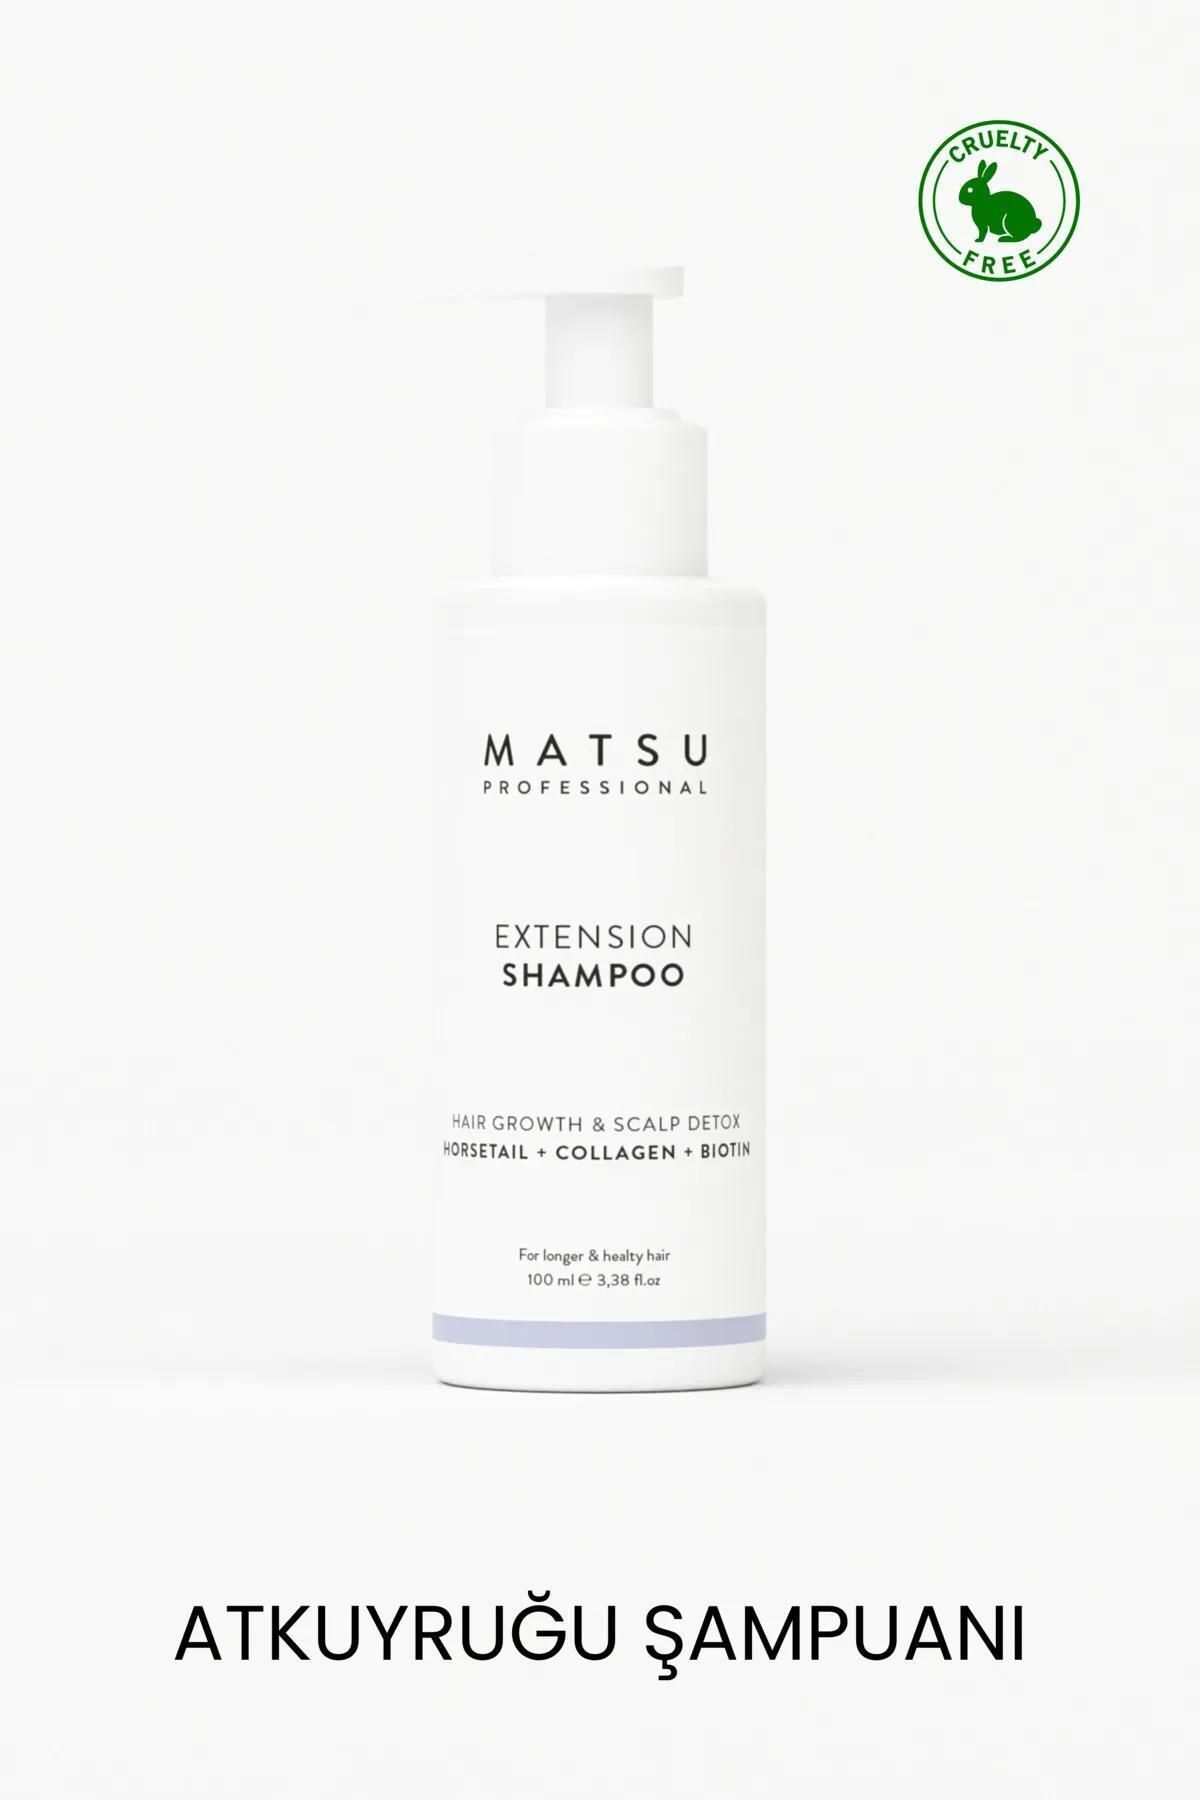 MATSU Extension Hızlı Saç Uzatmaya Yardımcı At Kuyruğu Şampuanı 100ml